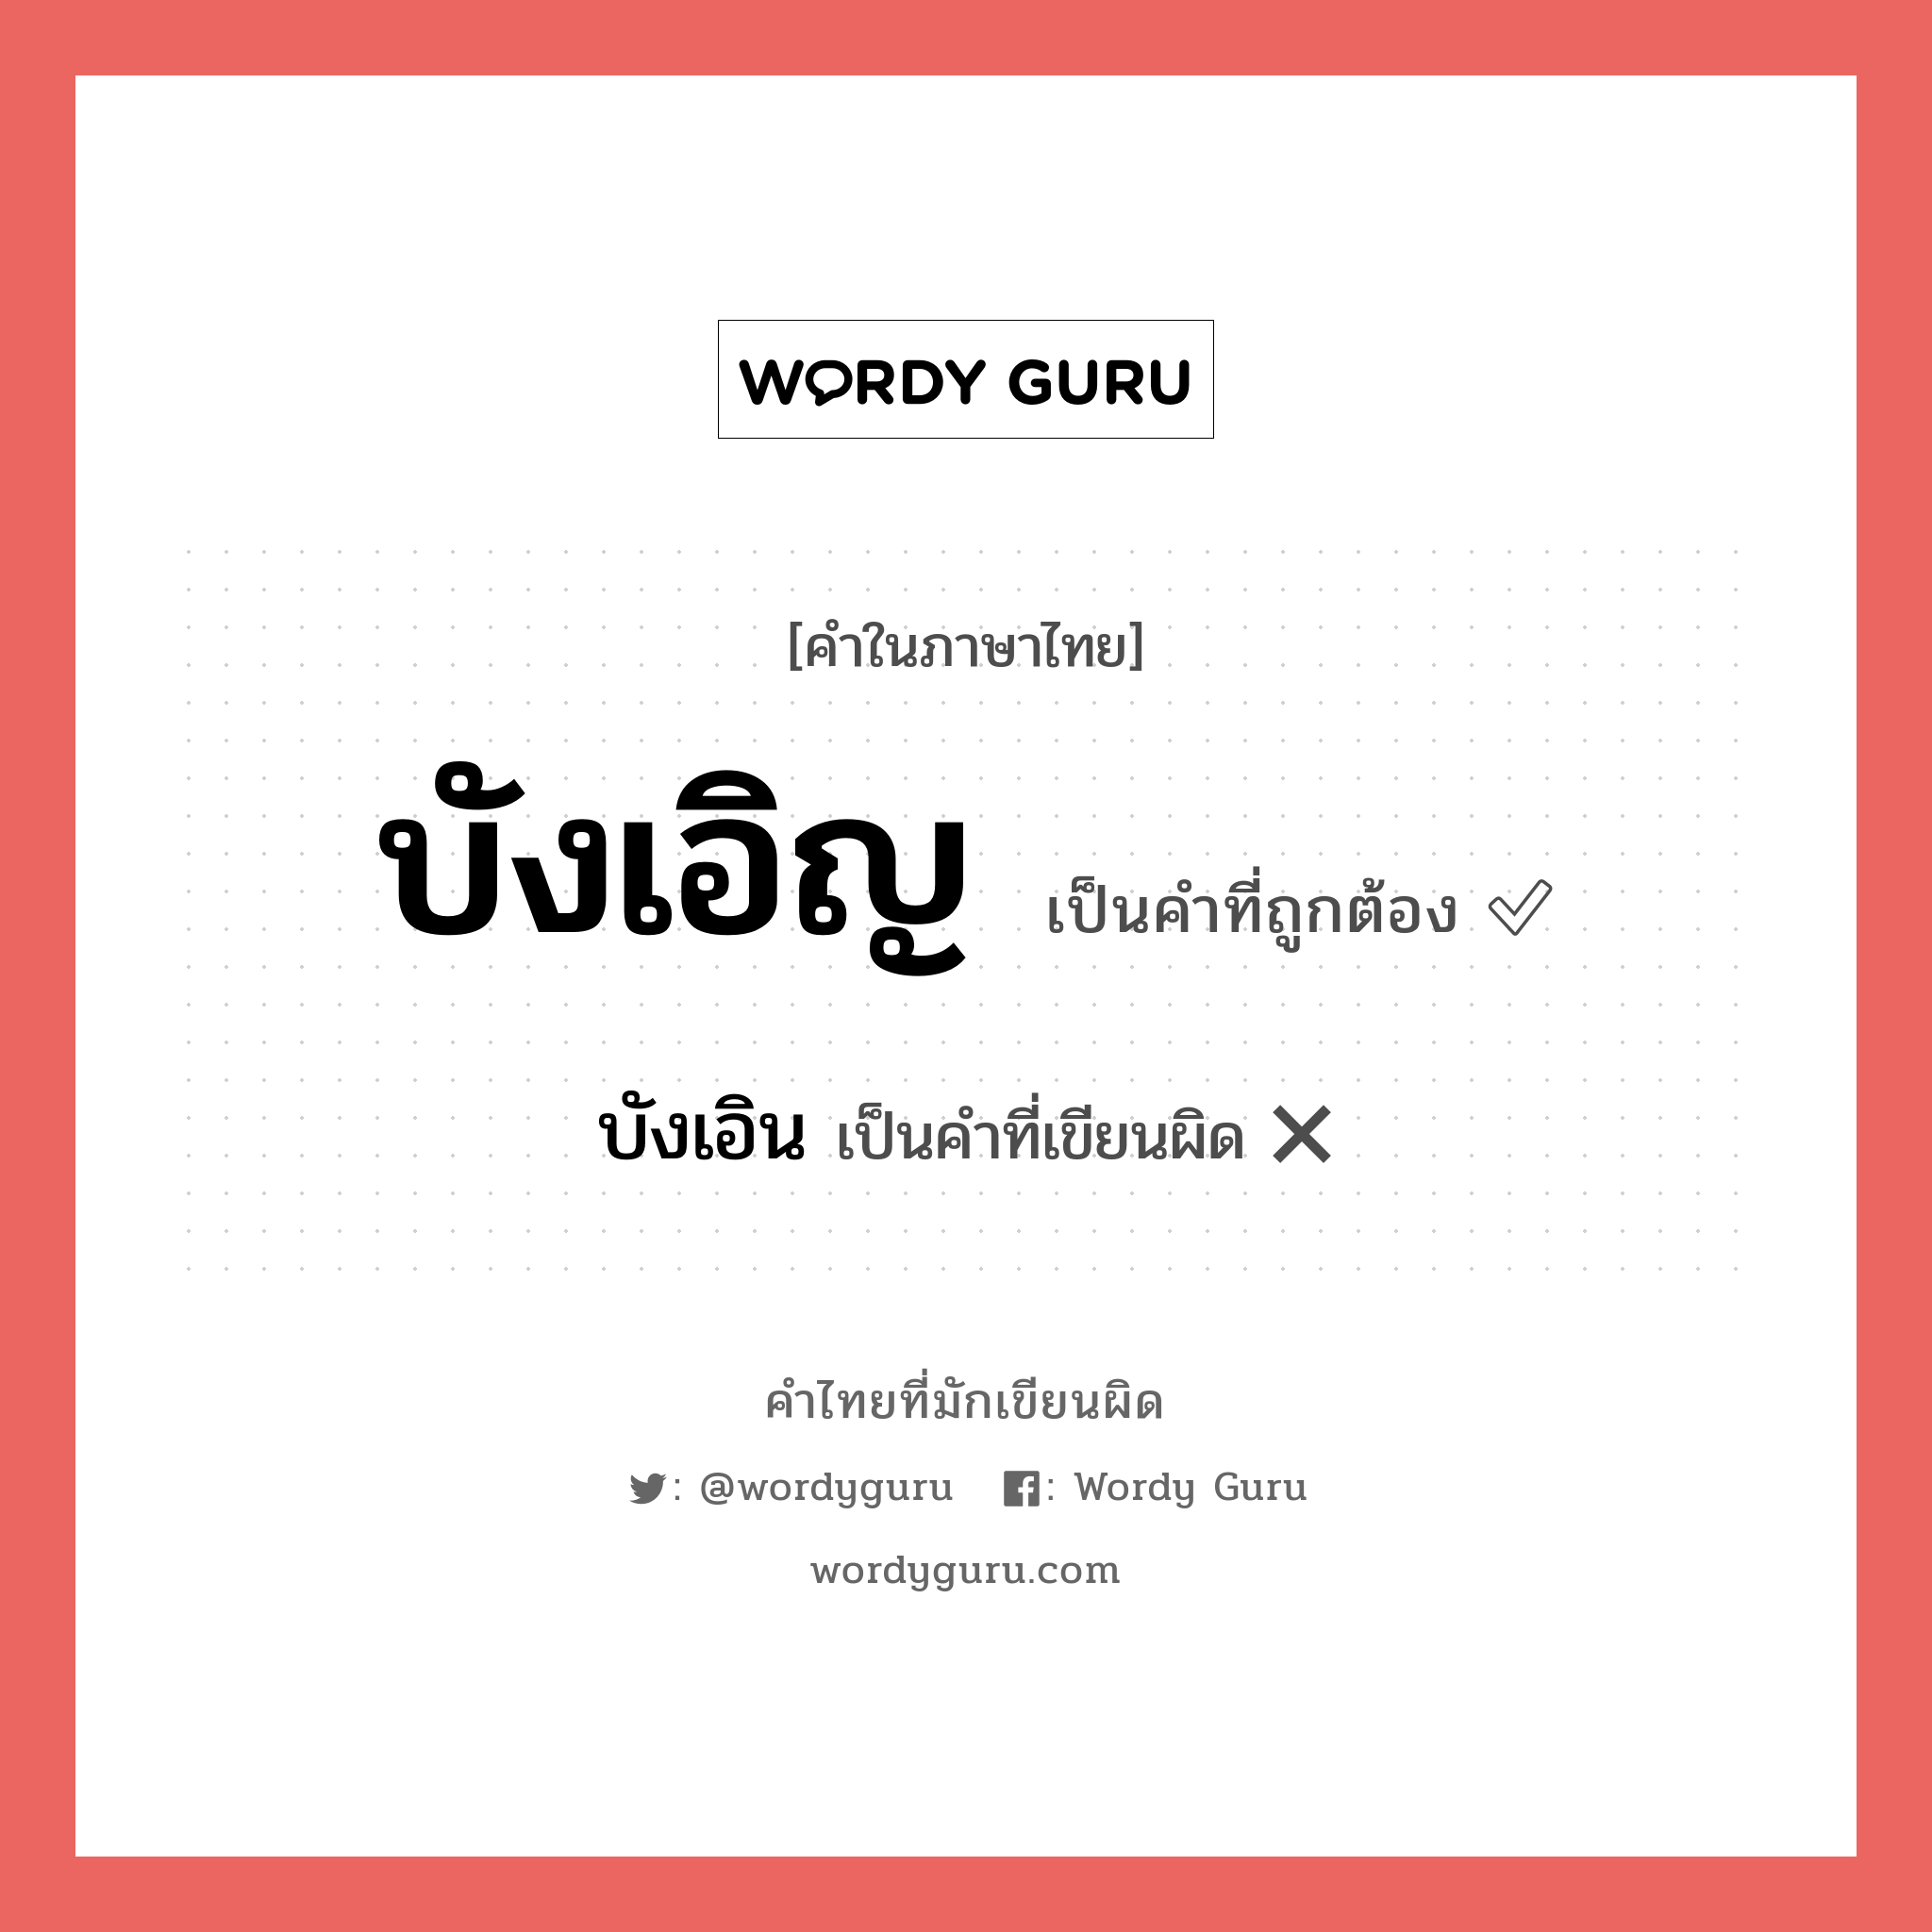 บังเอิญ หรือ บังเอิน คำไหนเขียนถูก?, คำในภาษาไทยที่มักเขียนผิด บังเอิญ คำที่ผิด ❌ บังเอิน